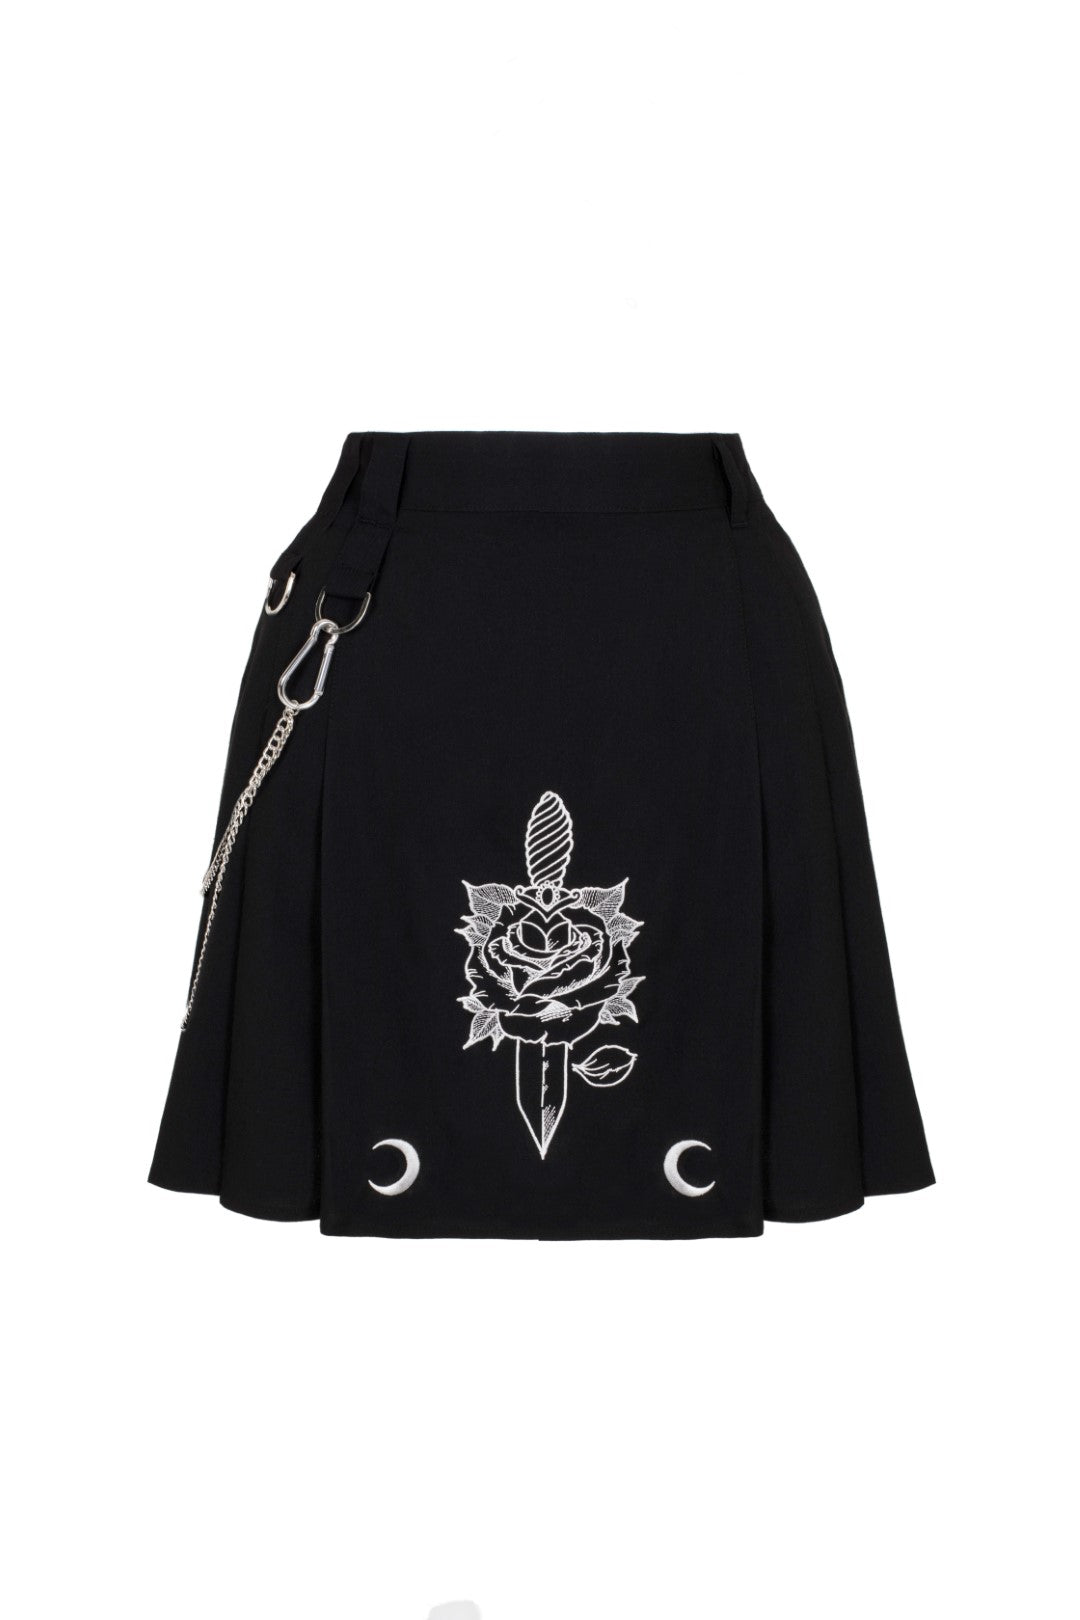 Roesia Skirt